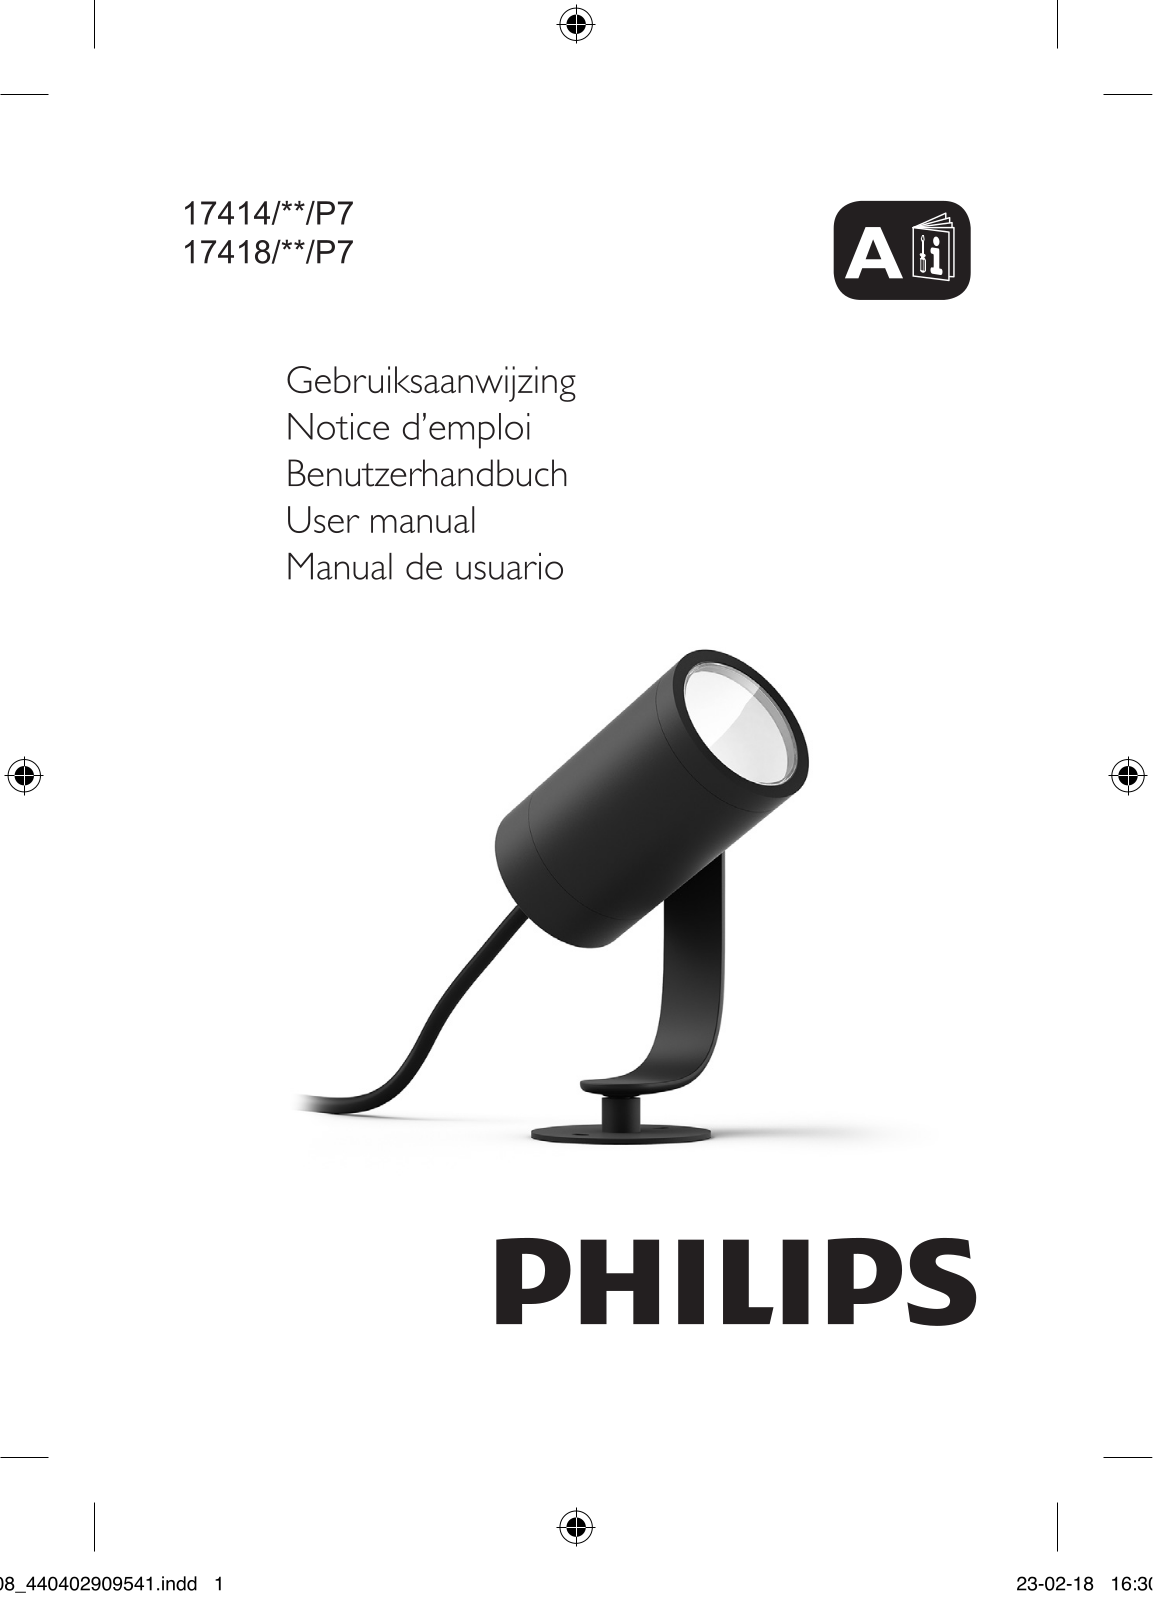 Philips 17414/**/P7, 17418/**/P7 User manual